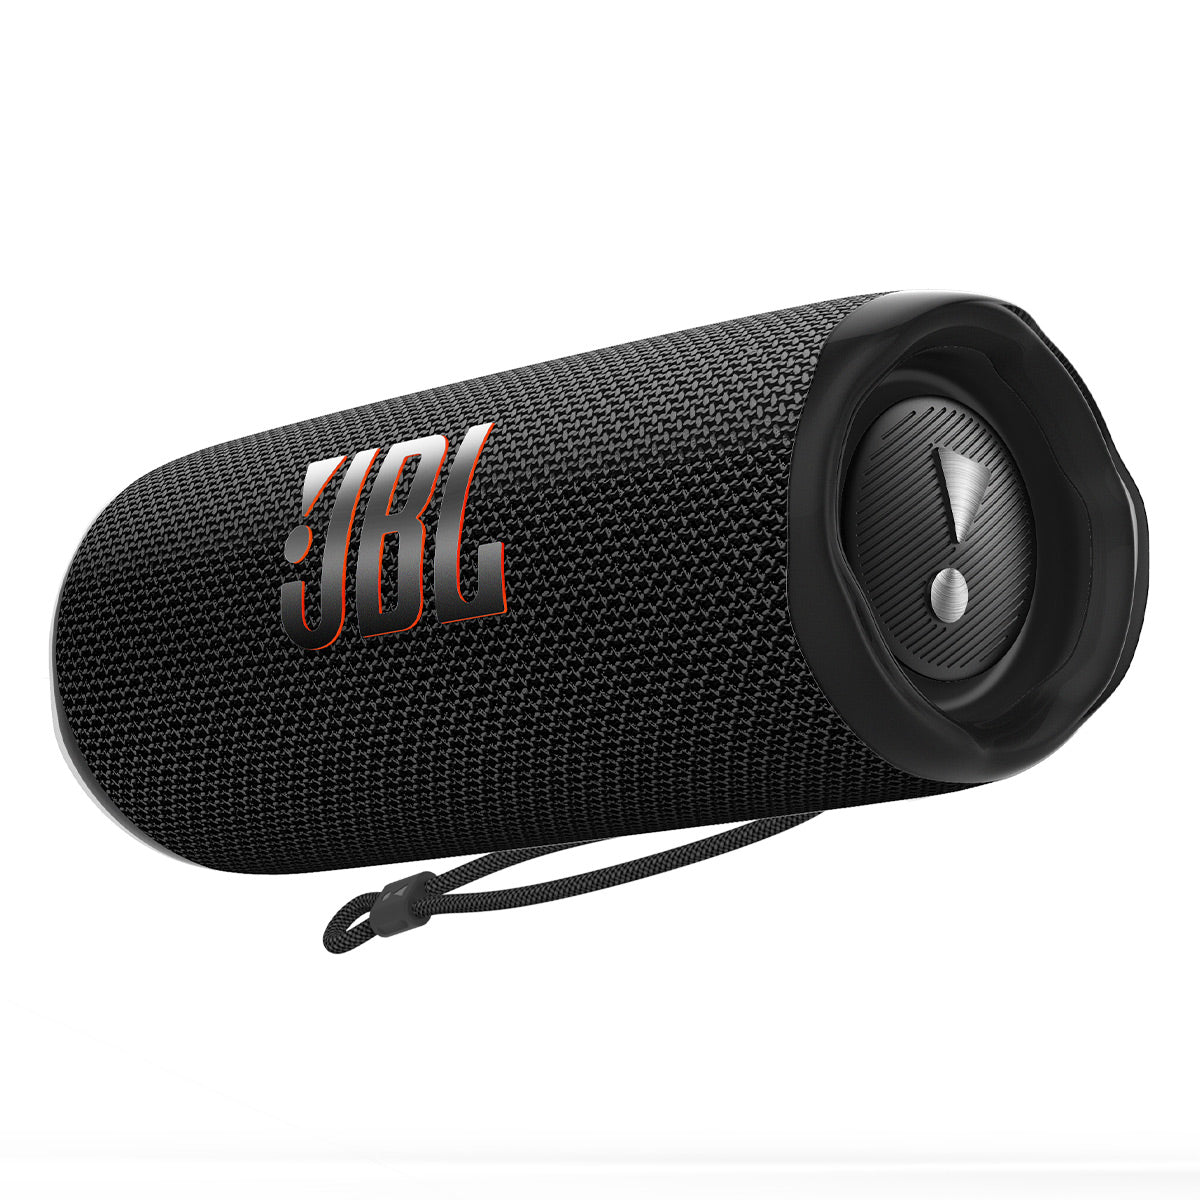 JBL Charge 3 review: Waterproof Bluetooth speaker plays louder